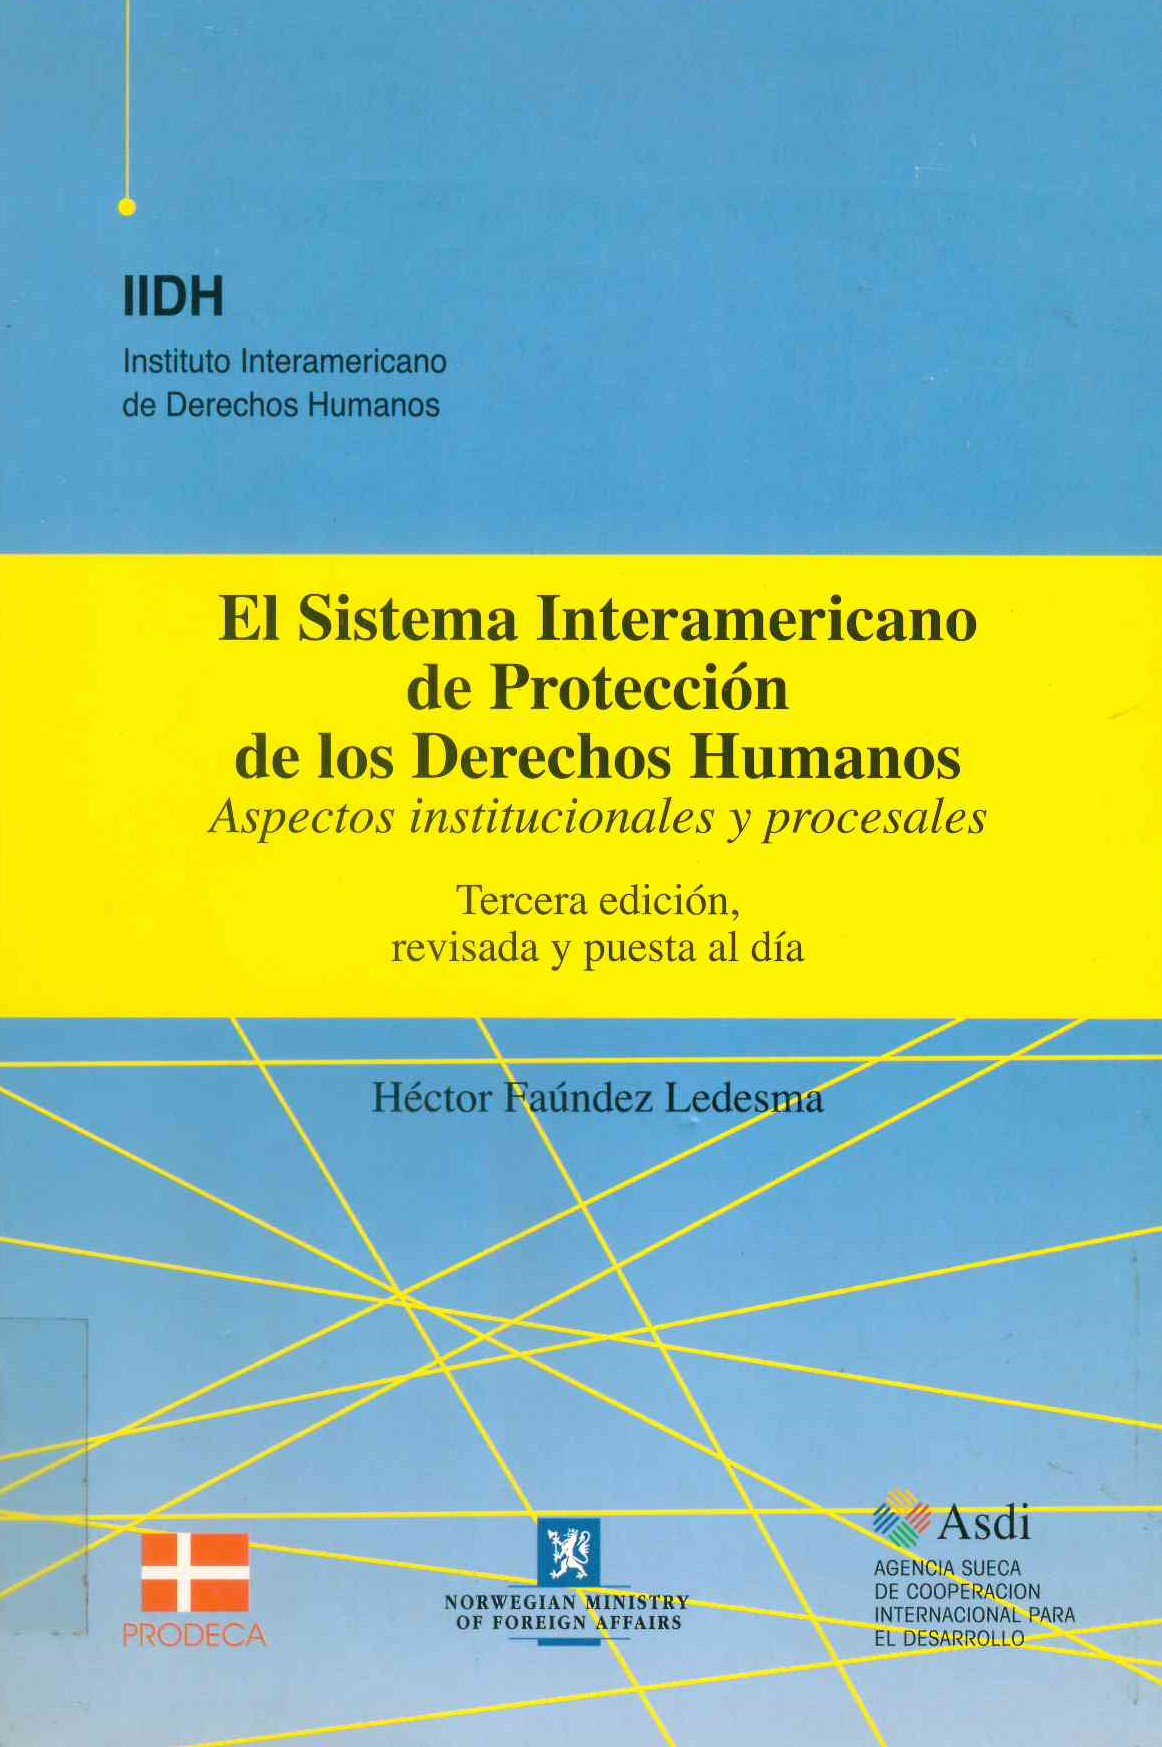 El sistema interamericano de protección de los derechos humanos: Aspectos institucionales y procesales